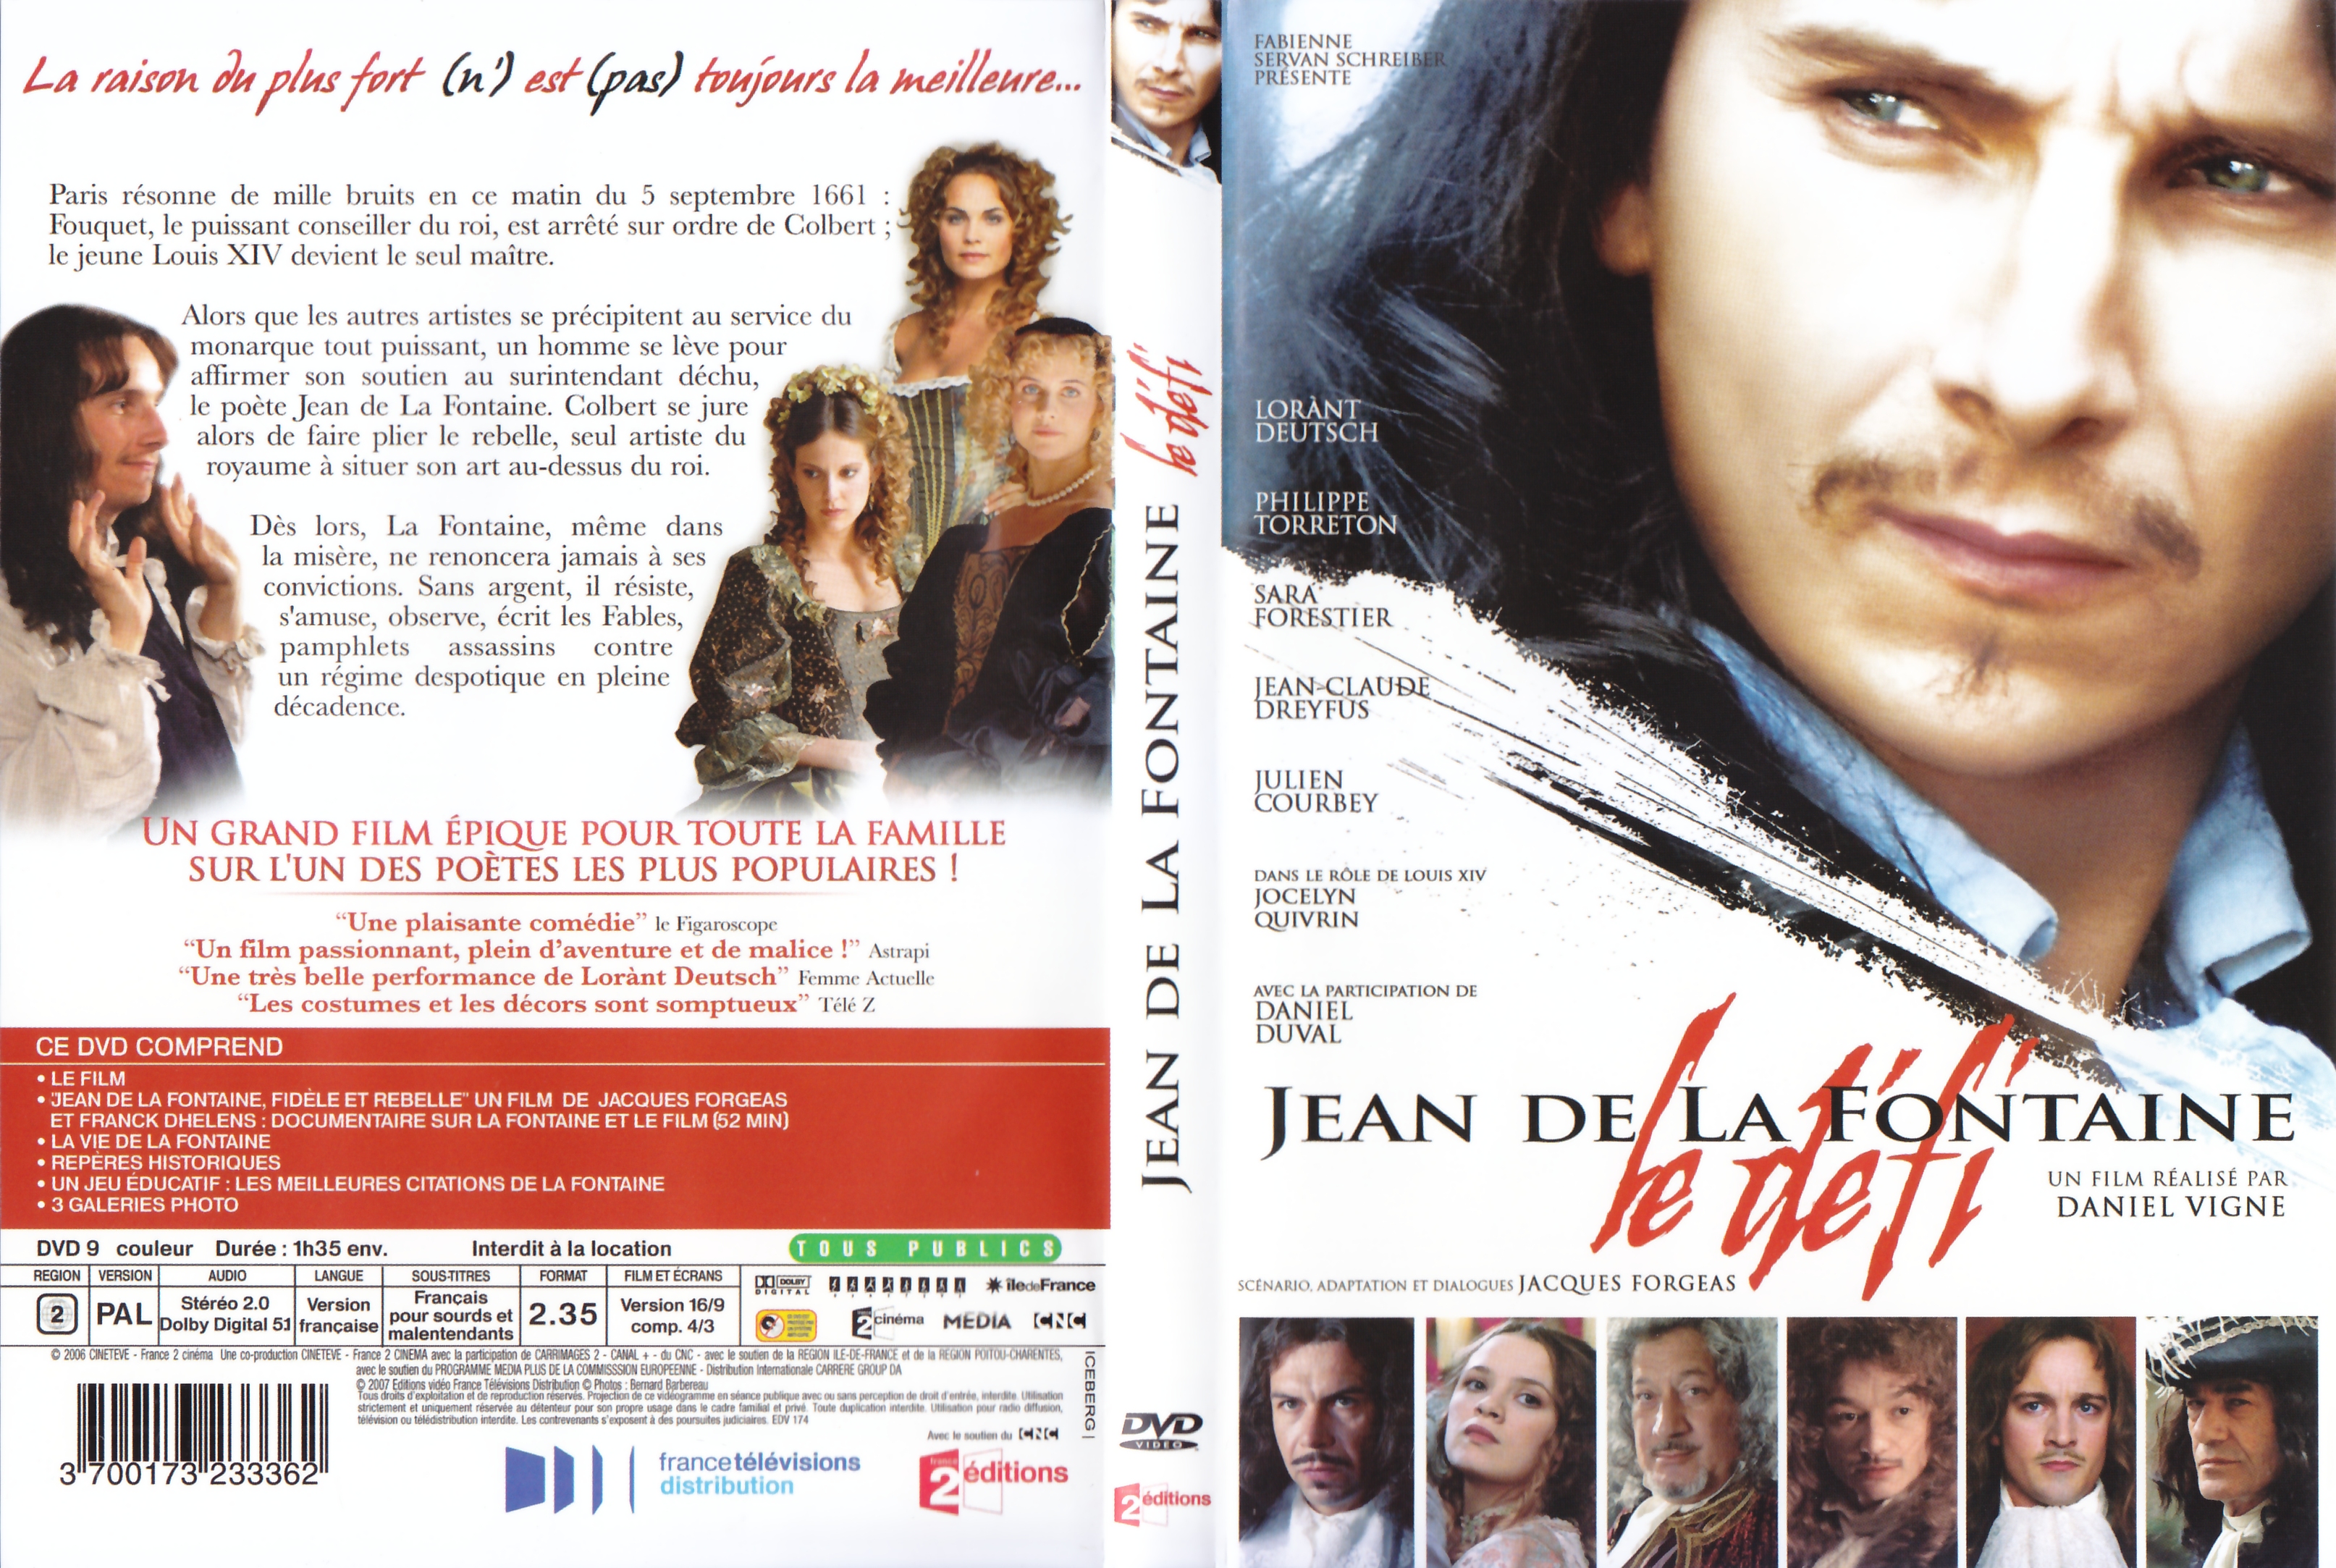 Jaquette DVD Jean de La Fontaine, le defi